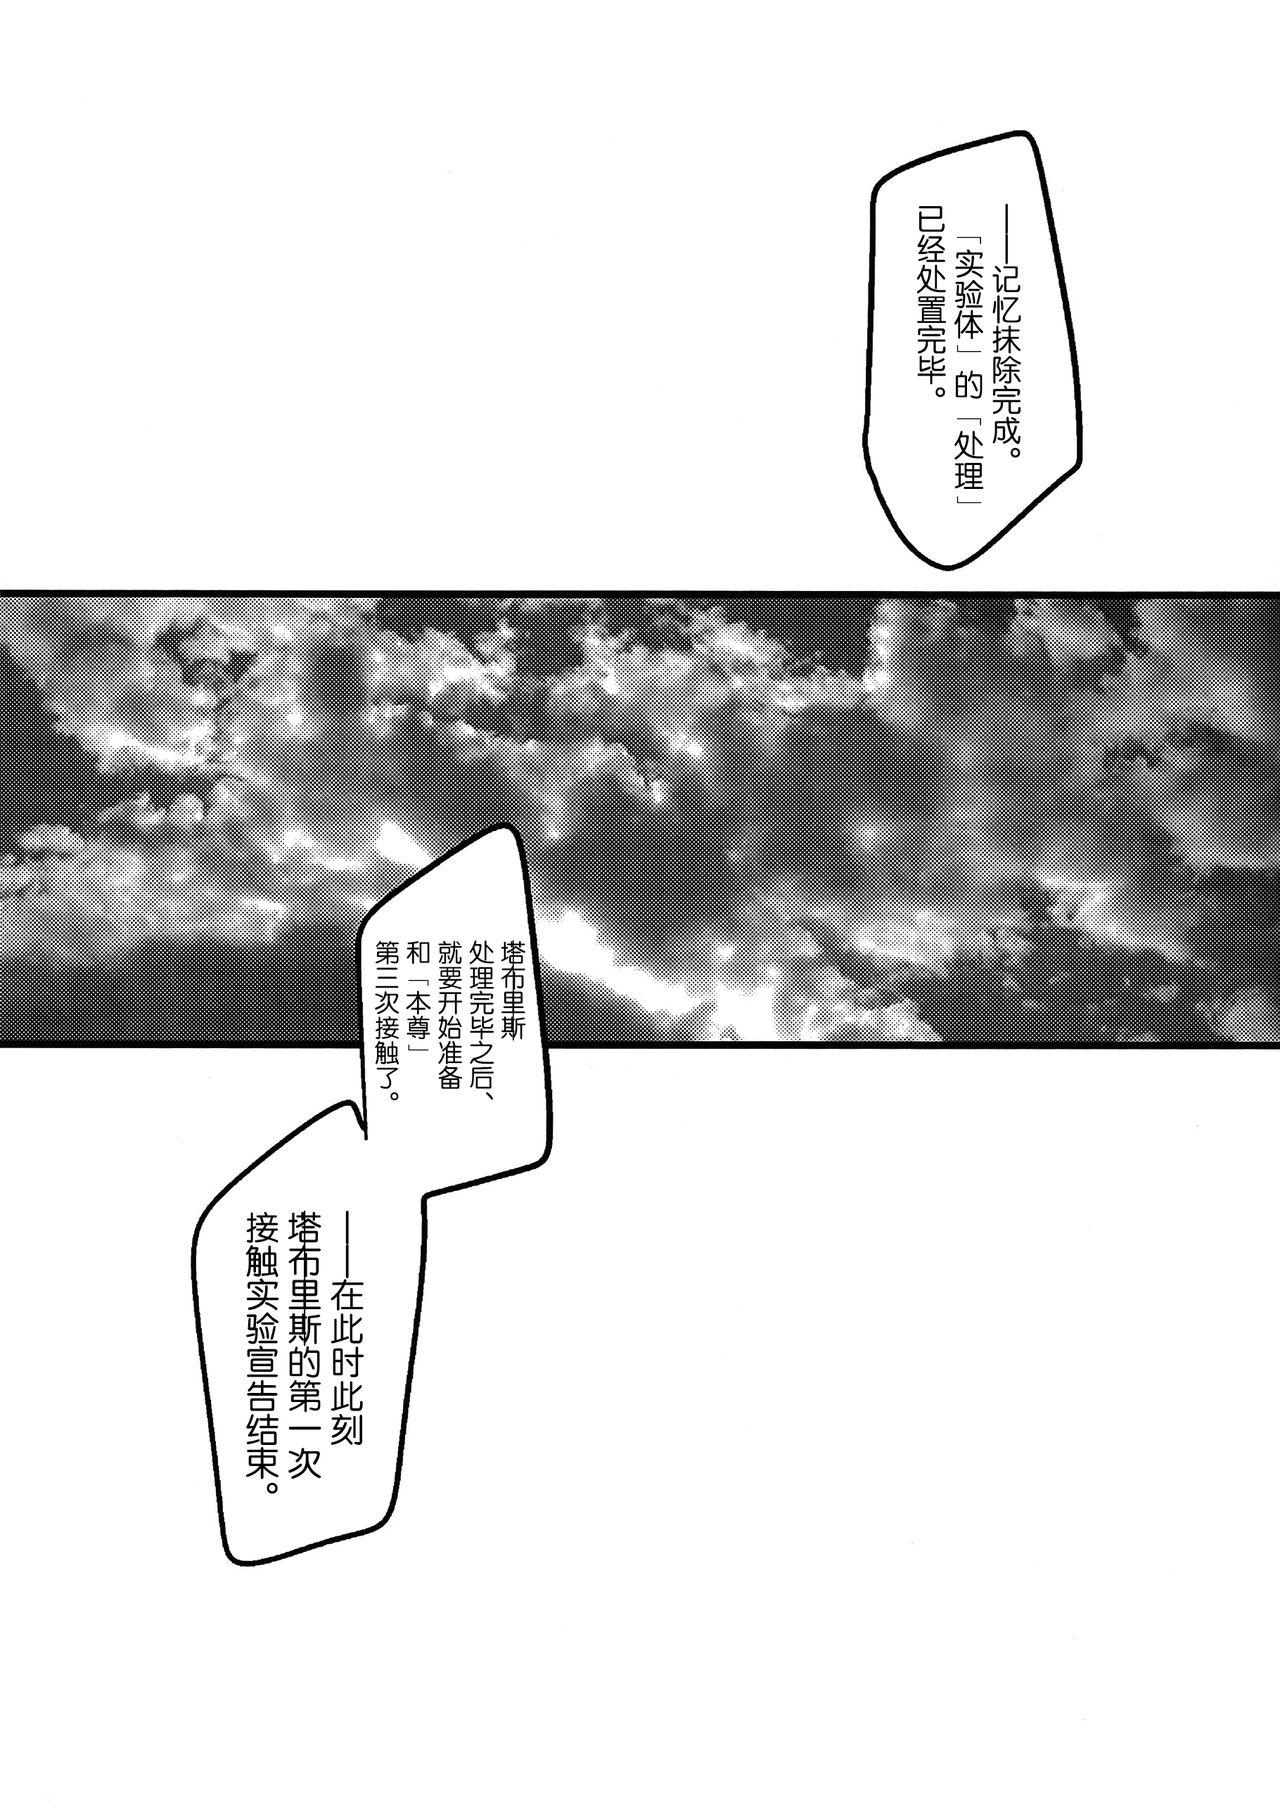 Skinny Ore no Koto o Ikari Shinji da to Omoikomu Saimin ni Kakatta Nagisa Kaworu-kun wa Mechamecha Yasashii - Neon genesis evangelion Arrecha - Page 11